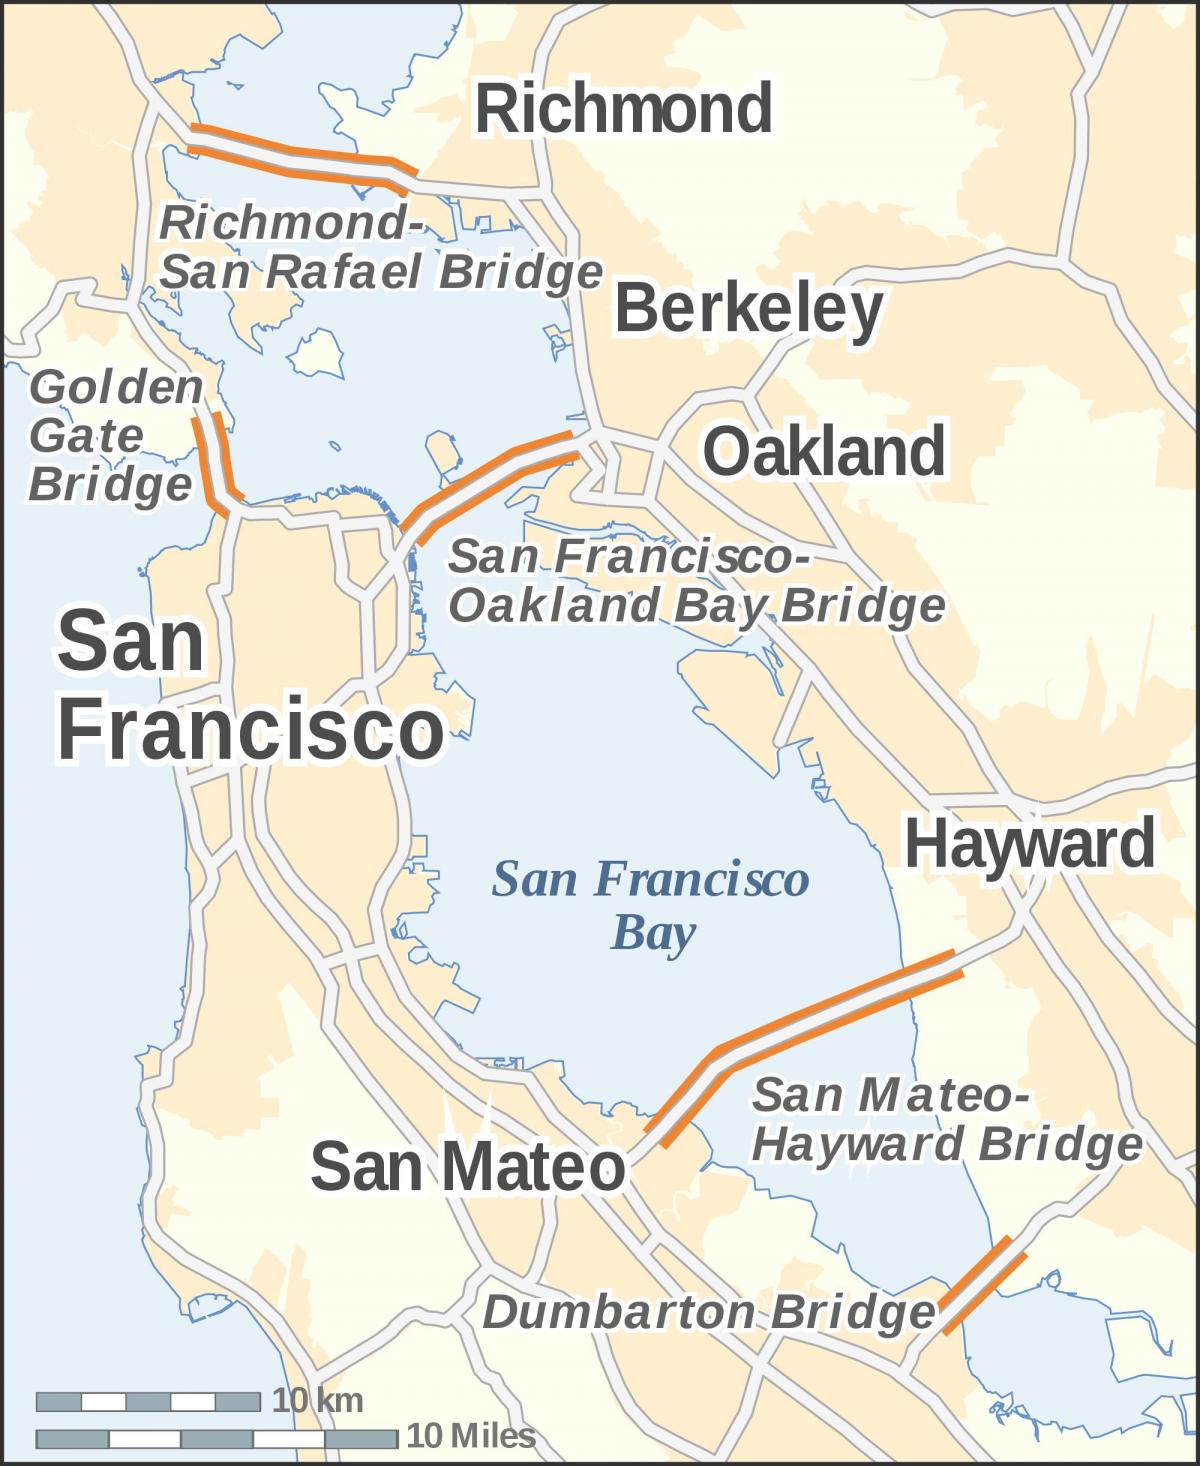 Kaart van San Francisco brûe